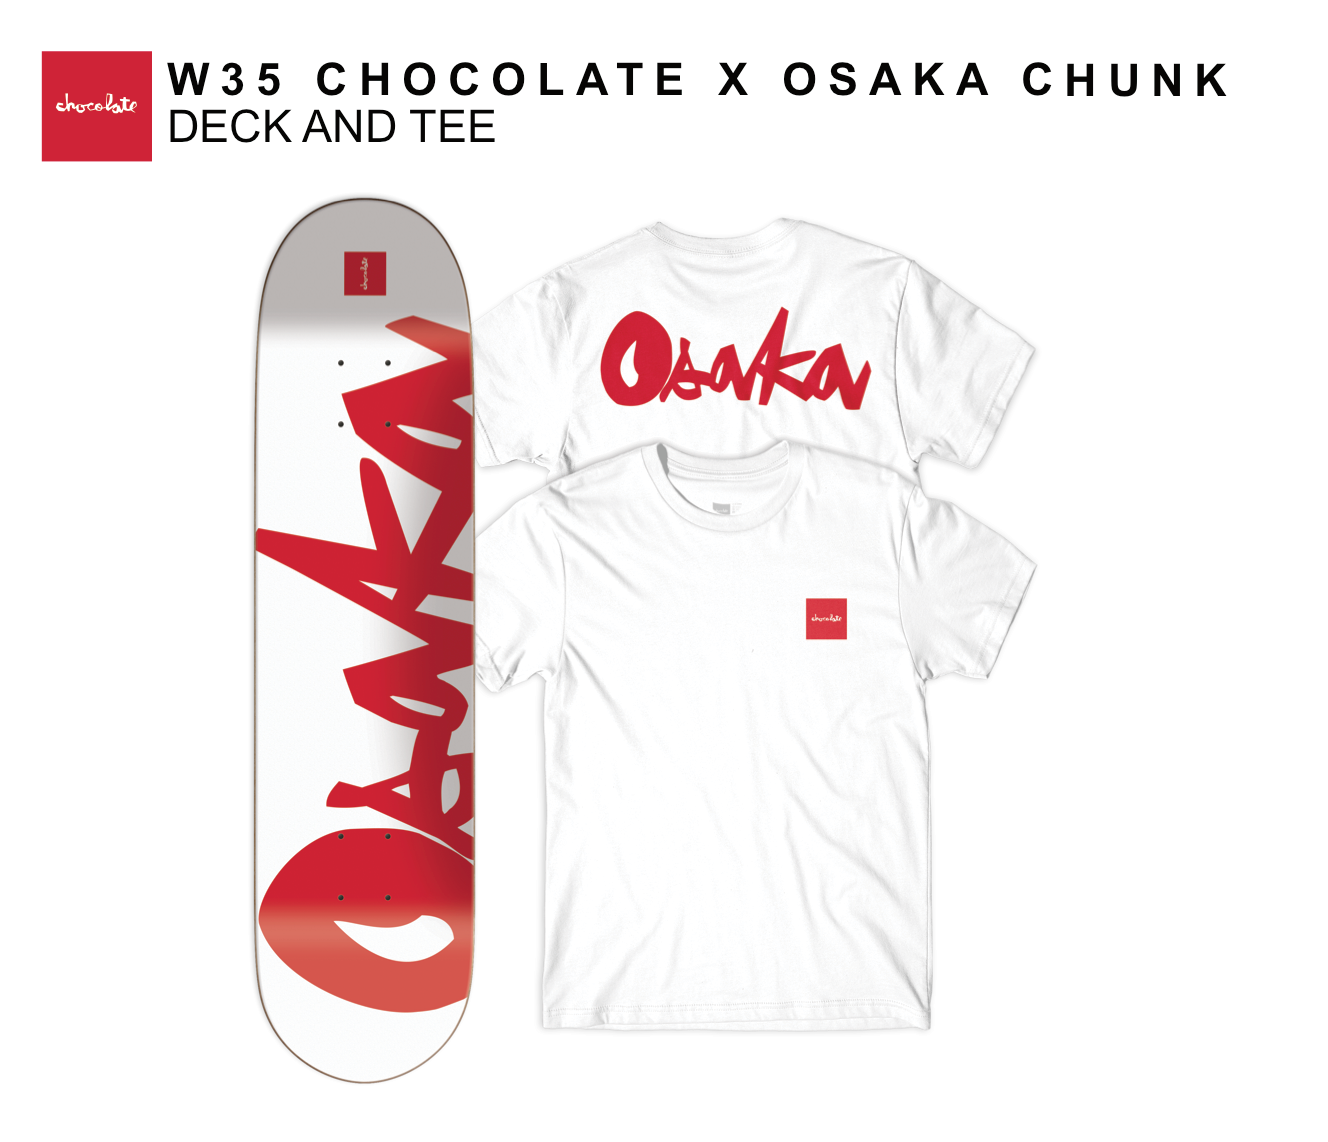 chocolate x Osaka